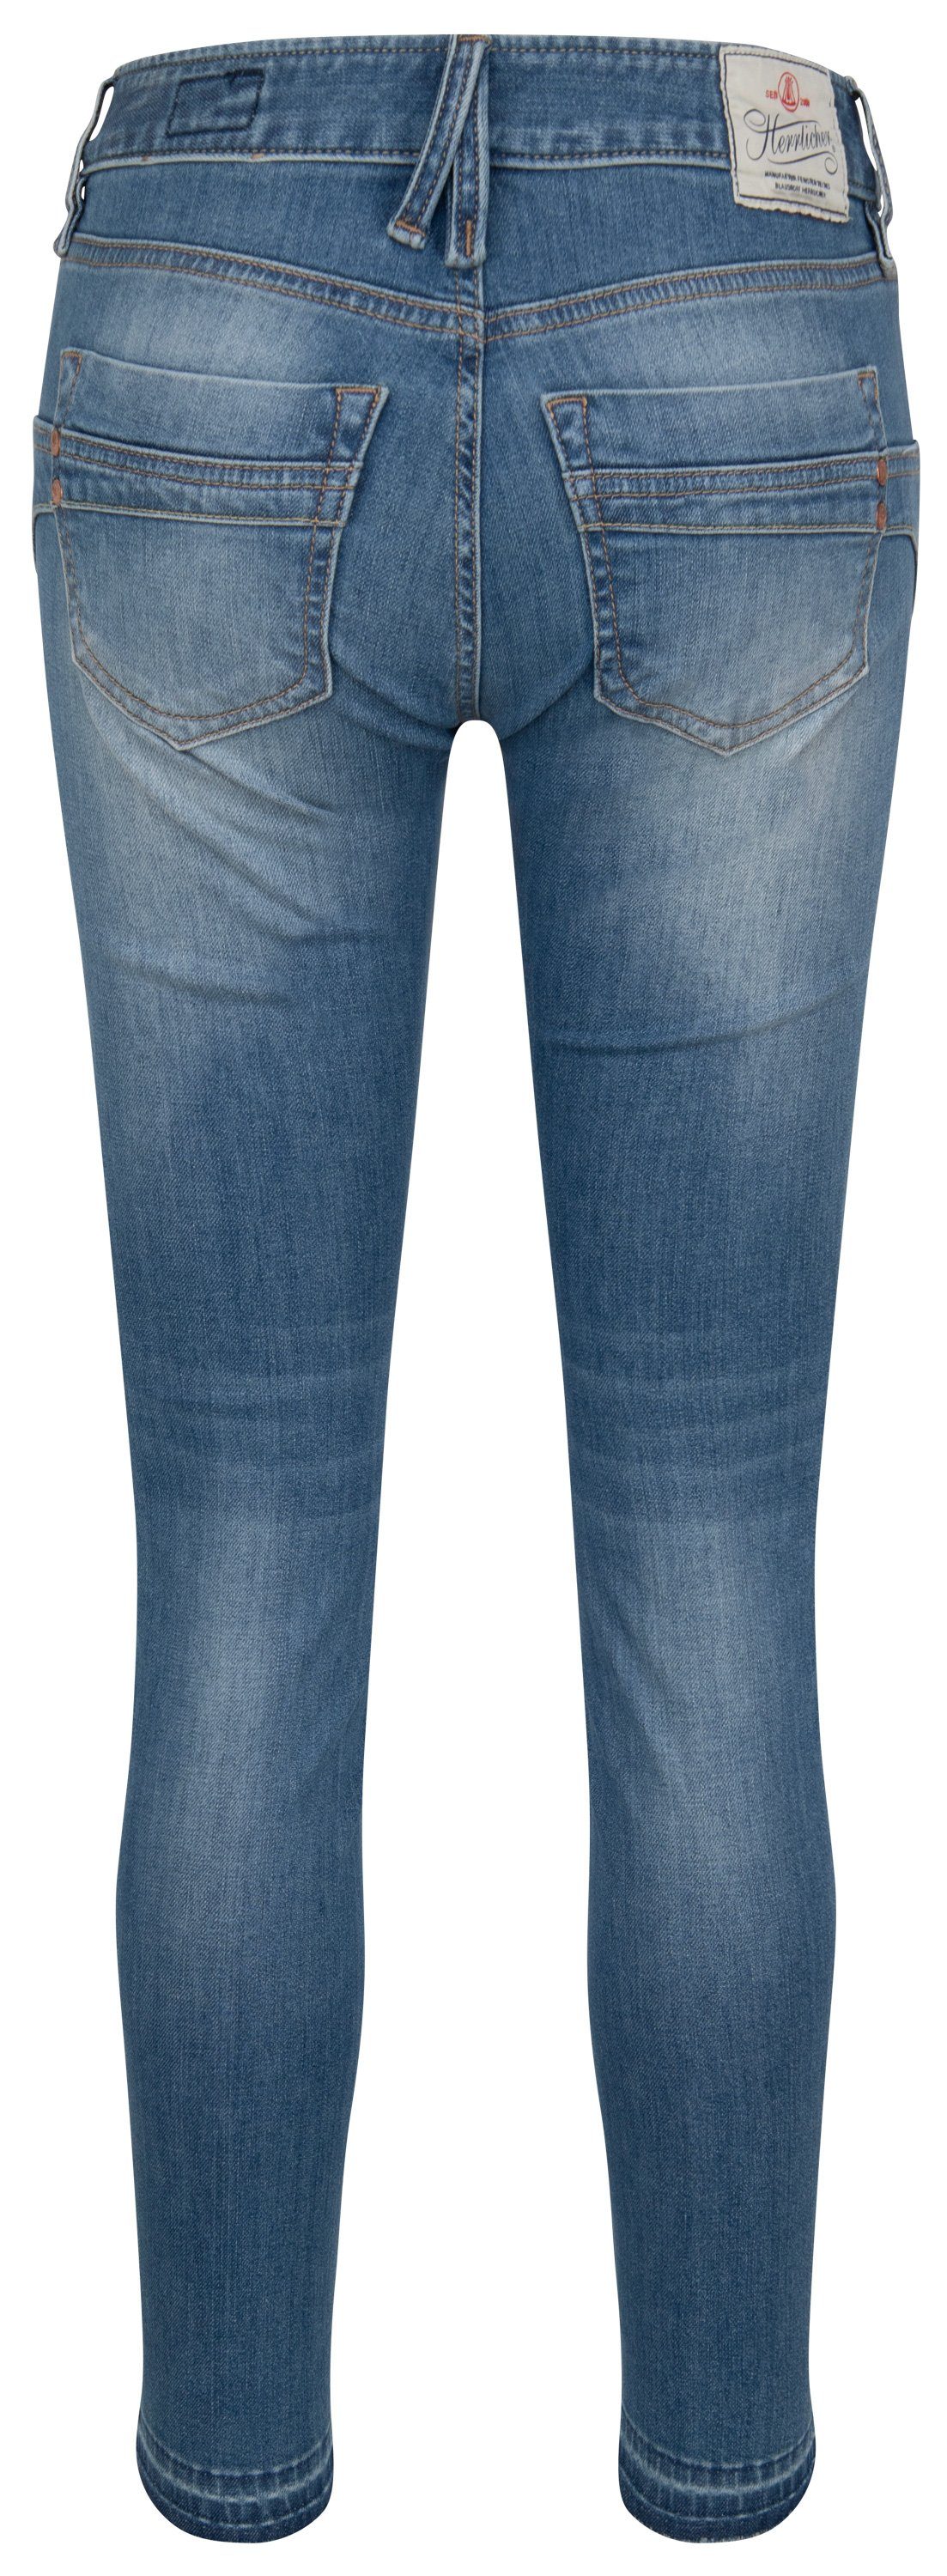 Herrlicher Stretch-Jeans HERRLICHER TOUCH Cropped 5320-OD100-879 Organic Denim blue sea